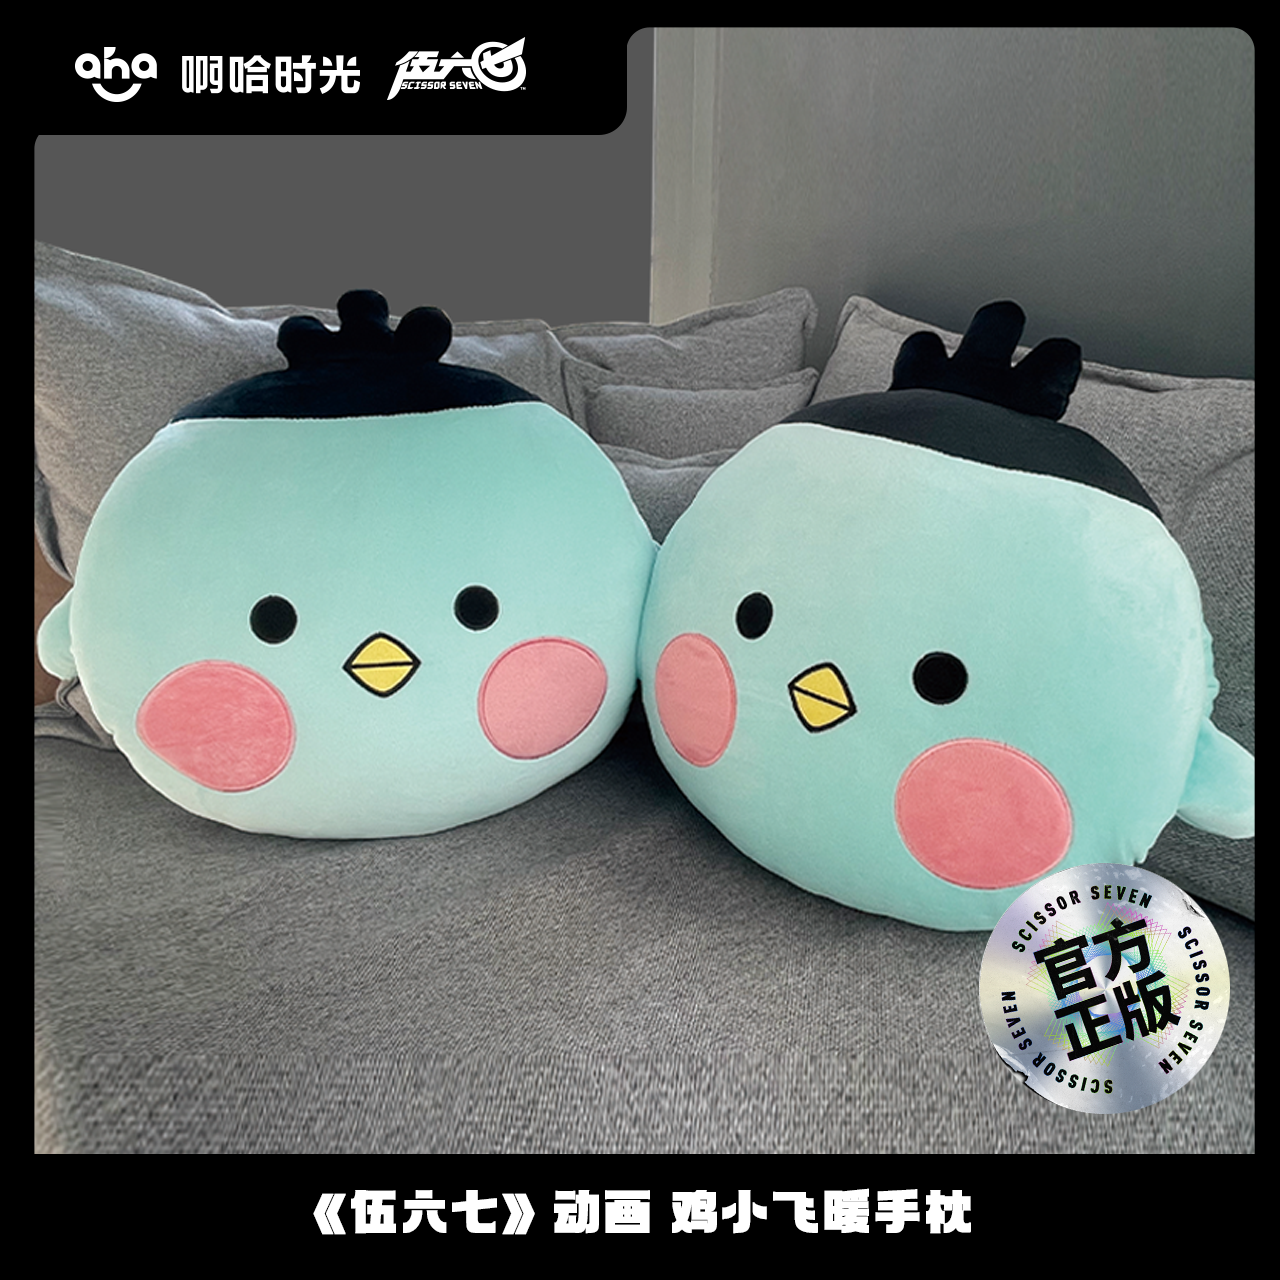 Xiaofei Hand Warmer Pillow